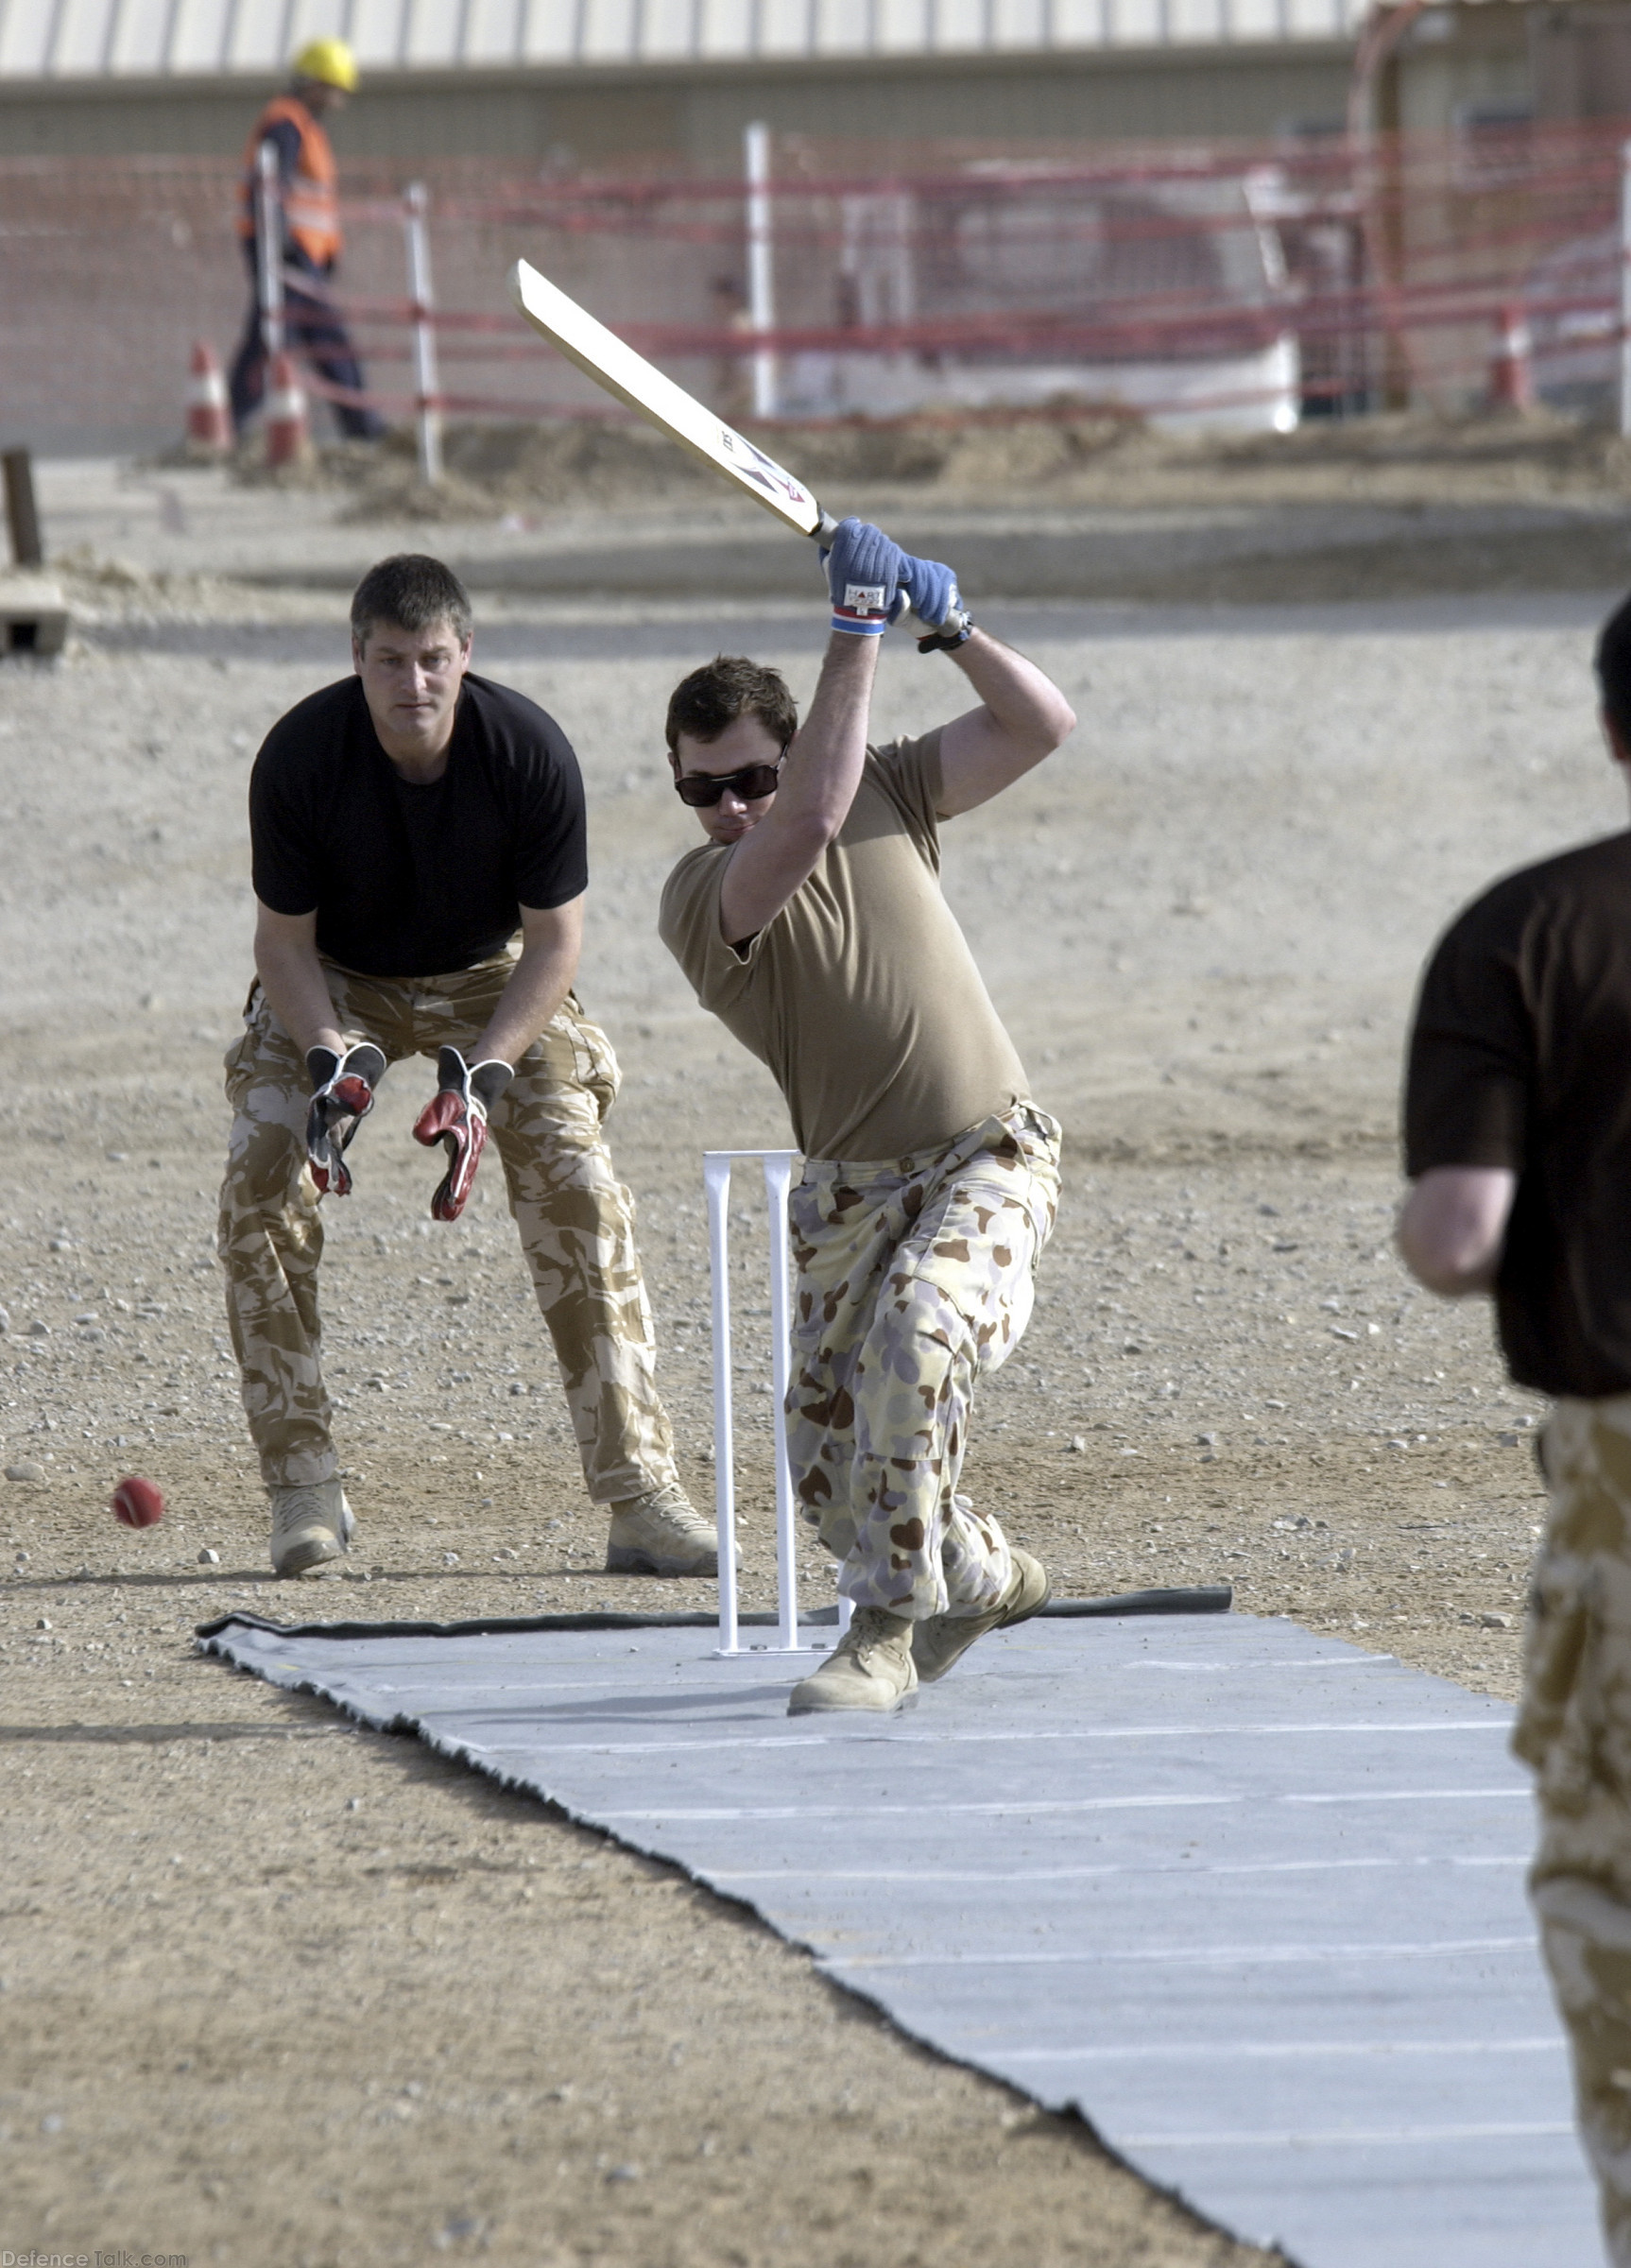 Off Drive -Cricket at Kandahar - Australia and England